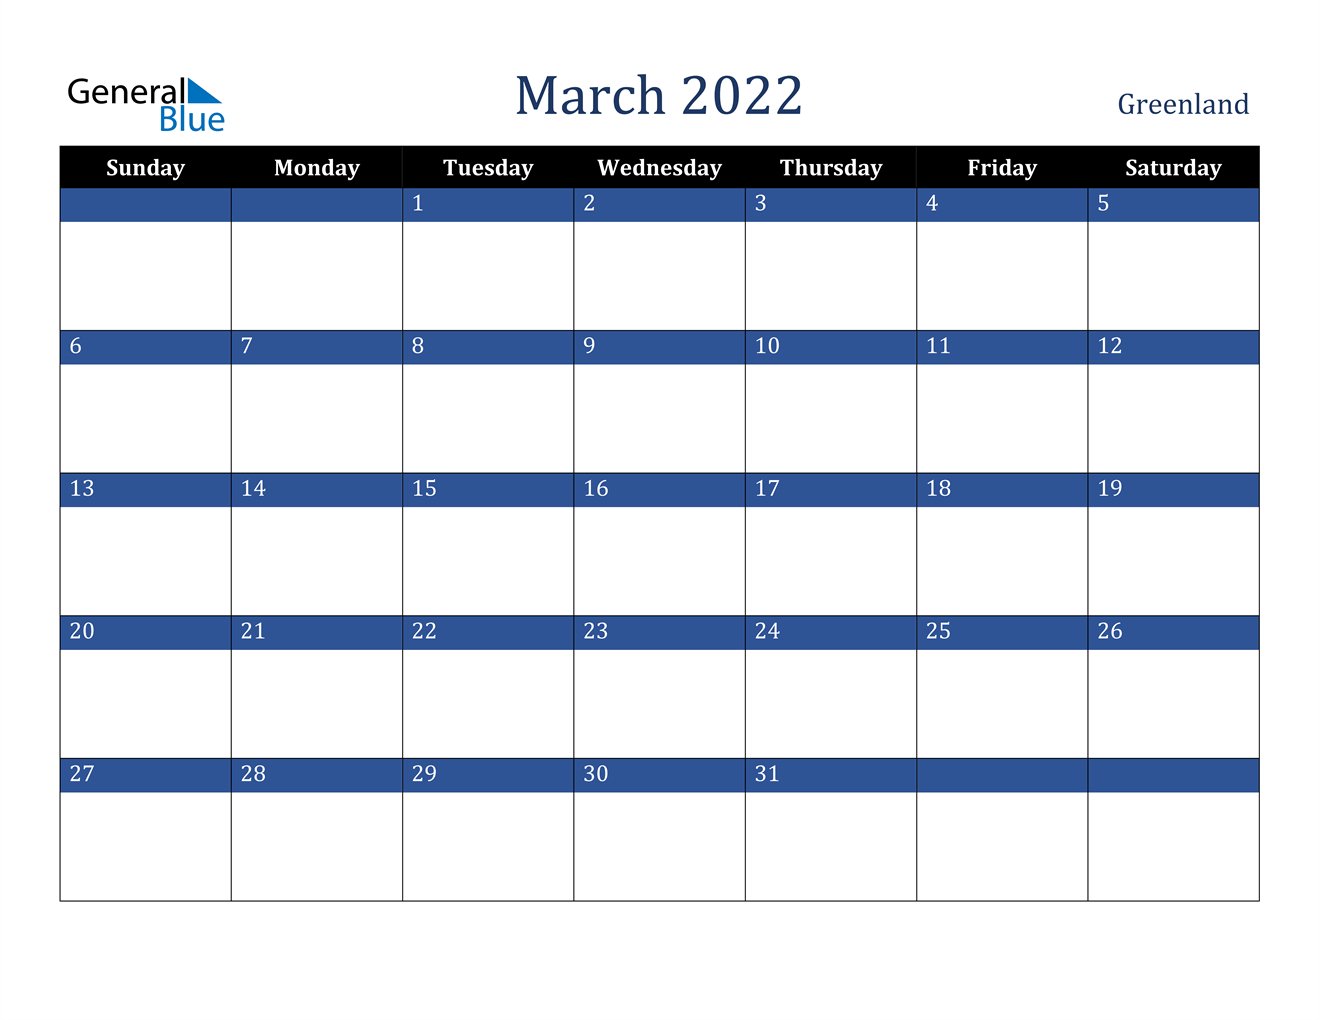 March 2022 Calendar - Greenland